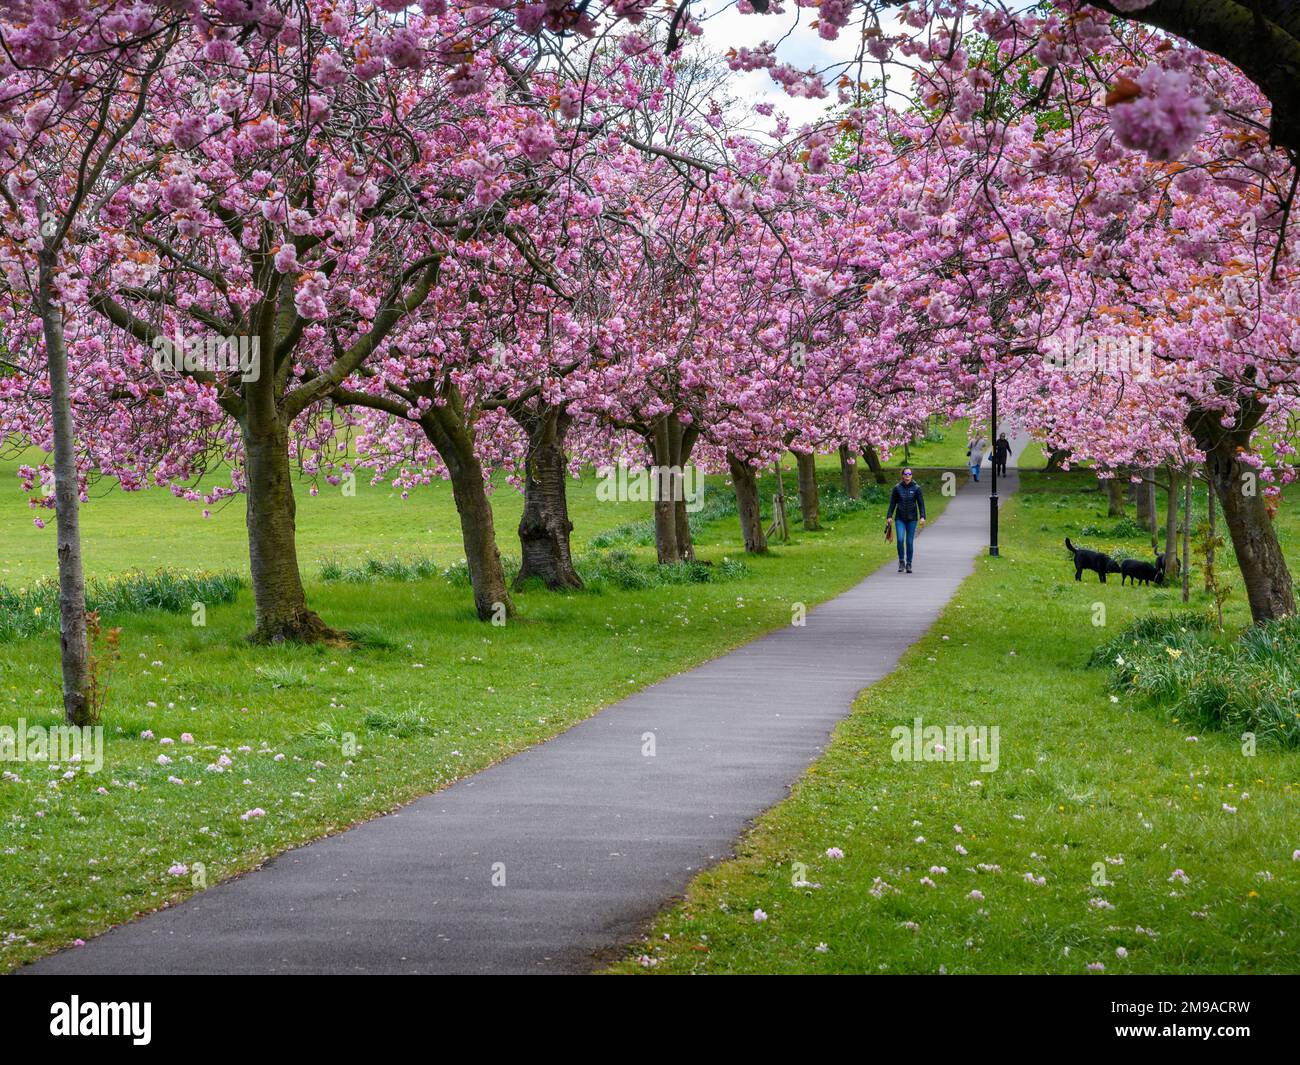 Pittoresque avenue des arbres (fleur rose colorée en fleur, branches surplombant le sentier, marcheur pour chiens, journée de printemps) - The Stray, Harrogate, Angleterre, Royaume-Uni. Banque D'Images